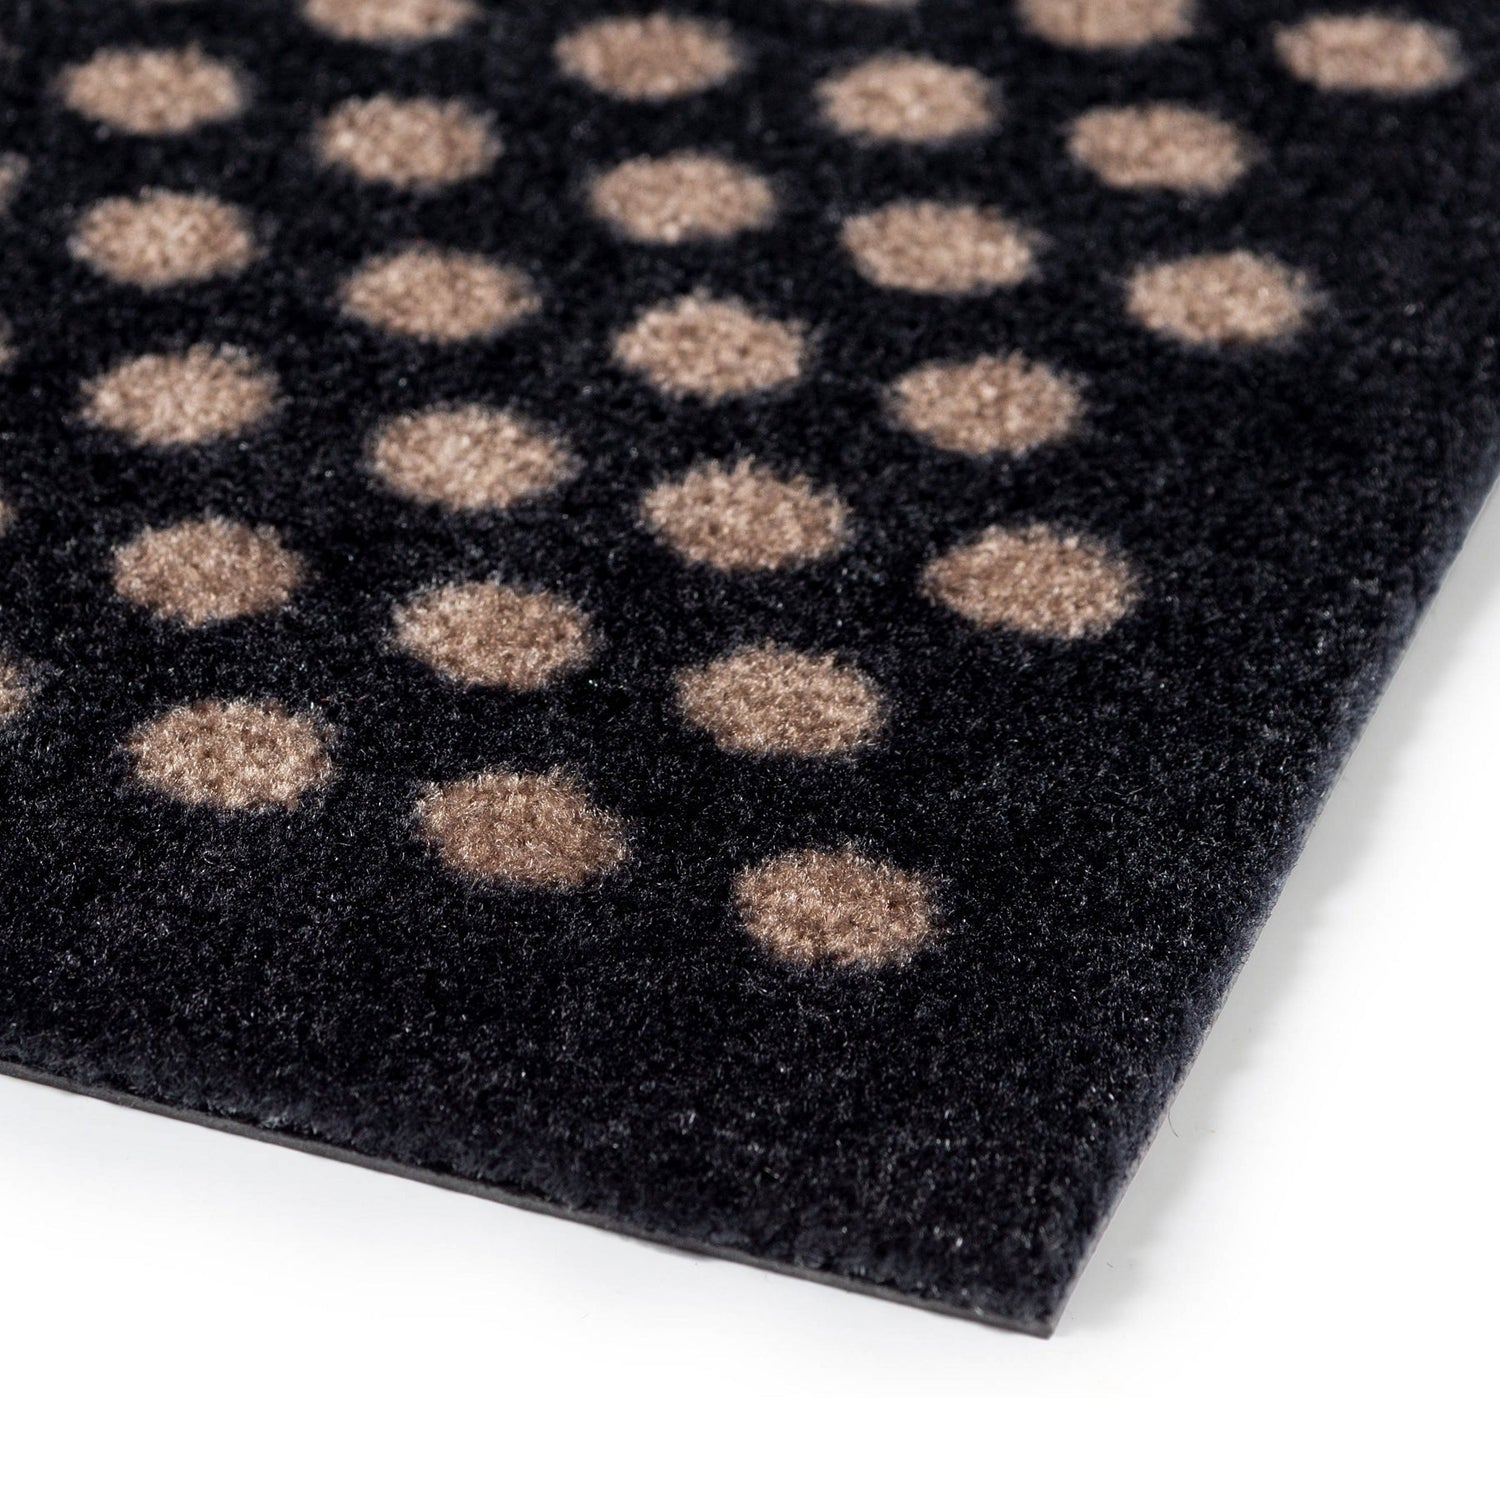 Bodenmatte 67 x 120 cm - Punkte/schwarzer Sand